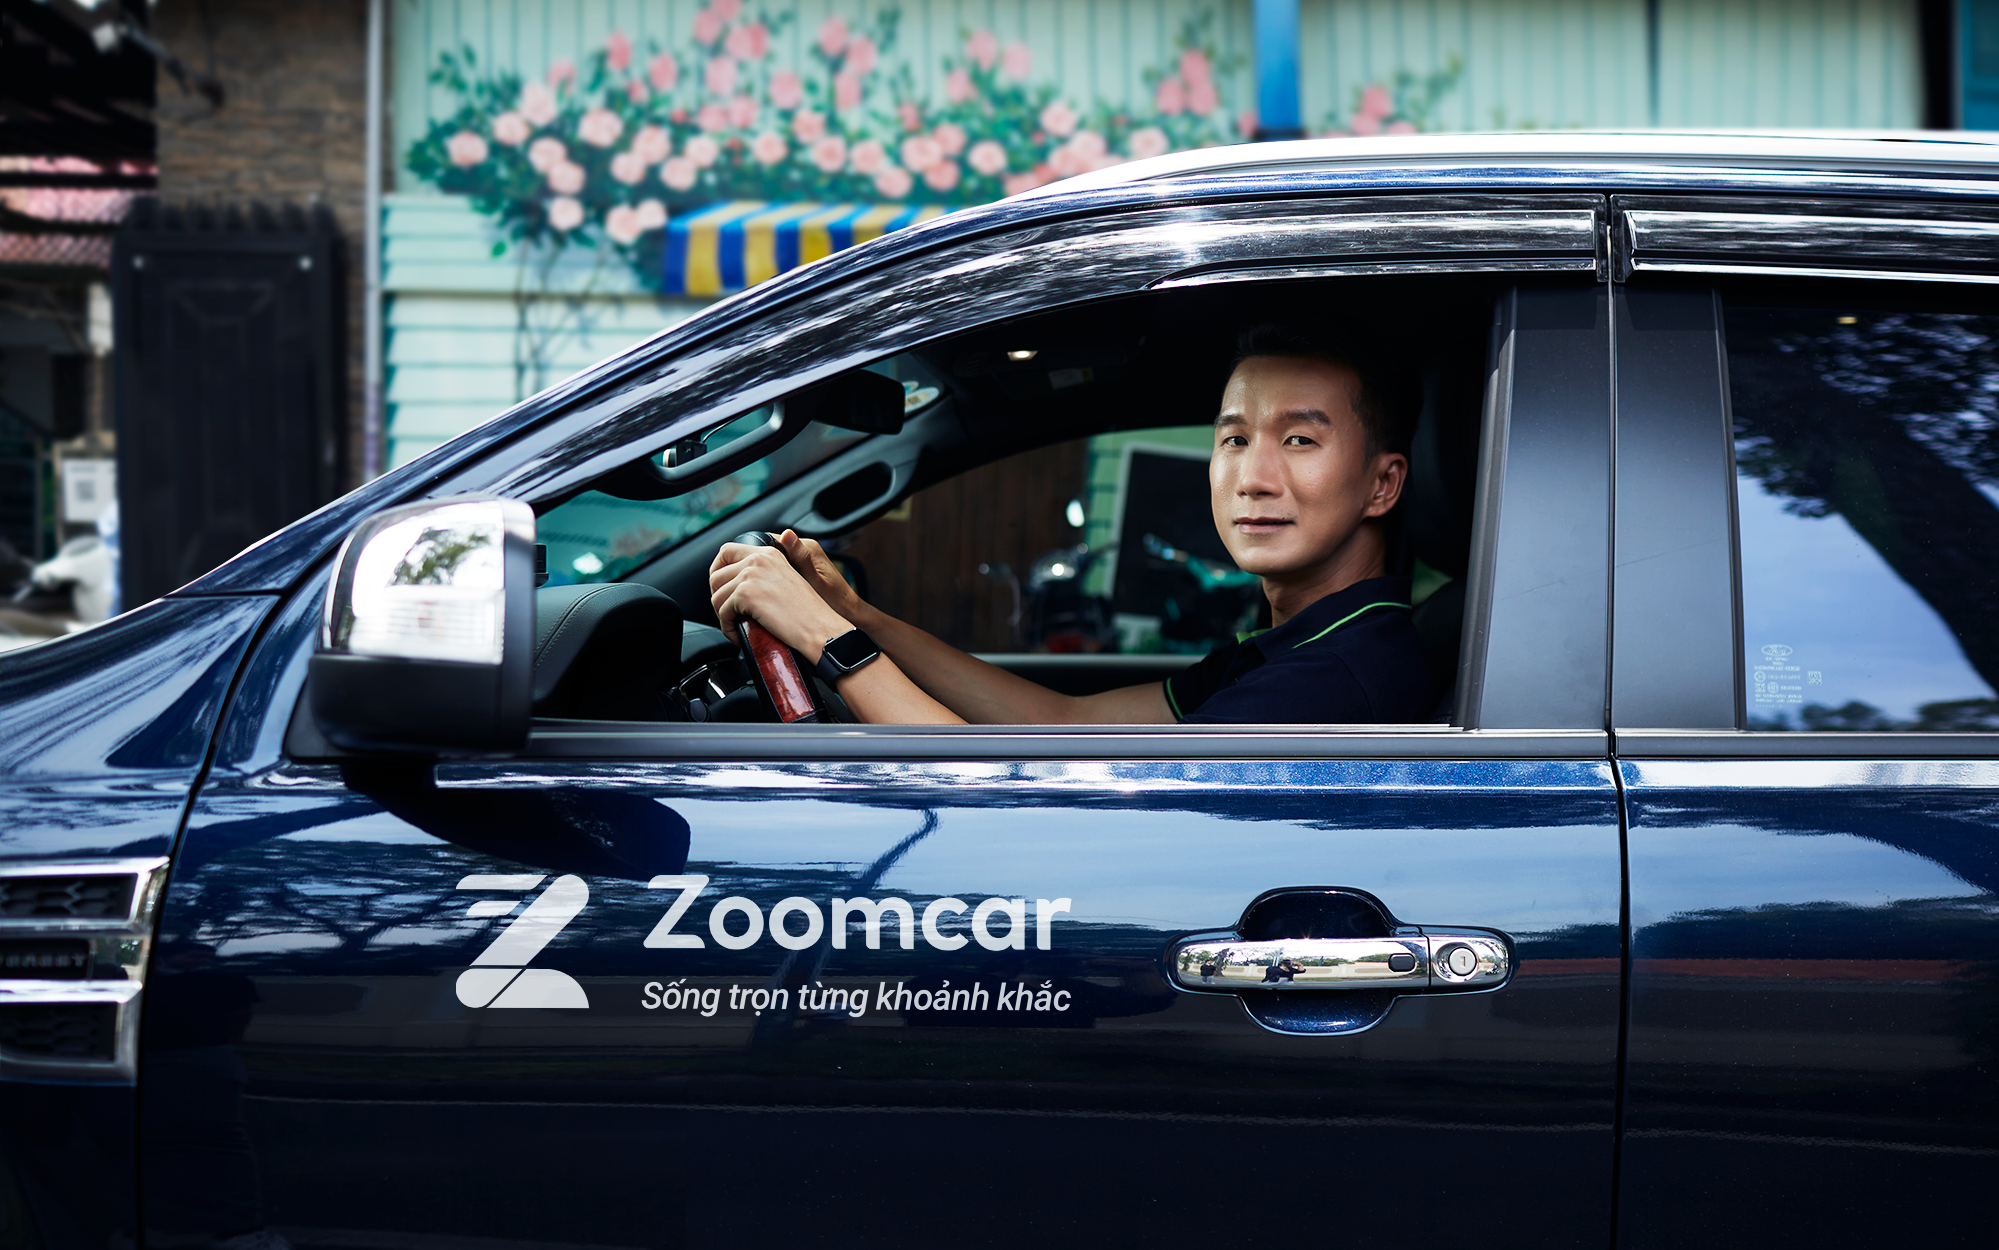 “Mạnh vì gạo bạo vì tiền’ như Zoomcar: Ra mắt gói bảo hiểm xe ô tô đầu tiên trên thị trường Việt với giá trị bồi thường lên đến 200 triệu đồng